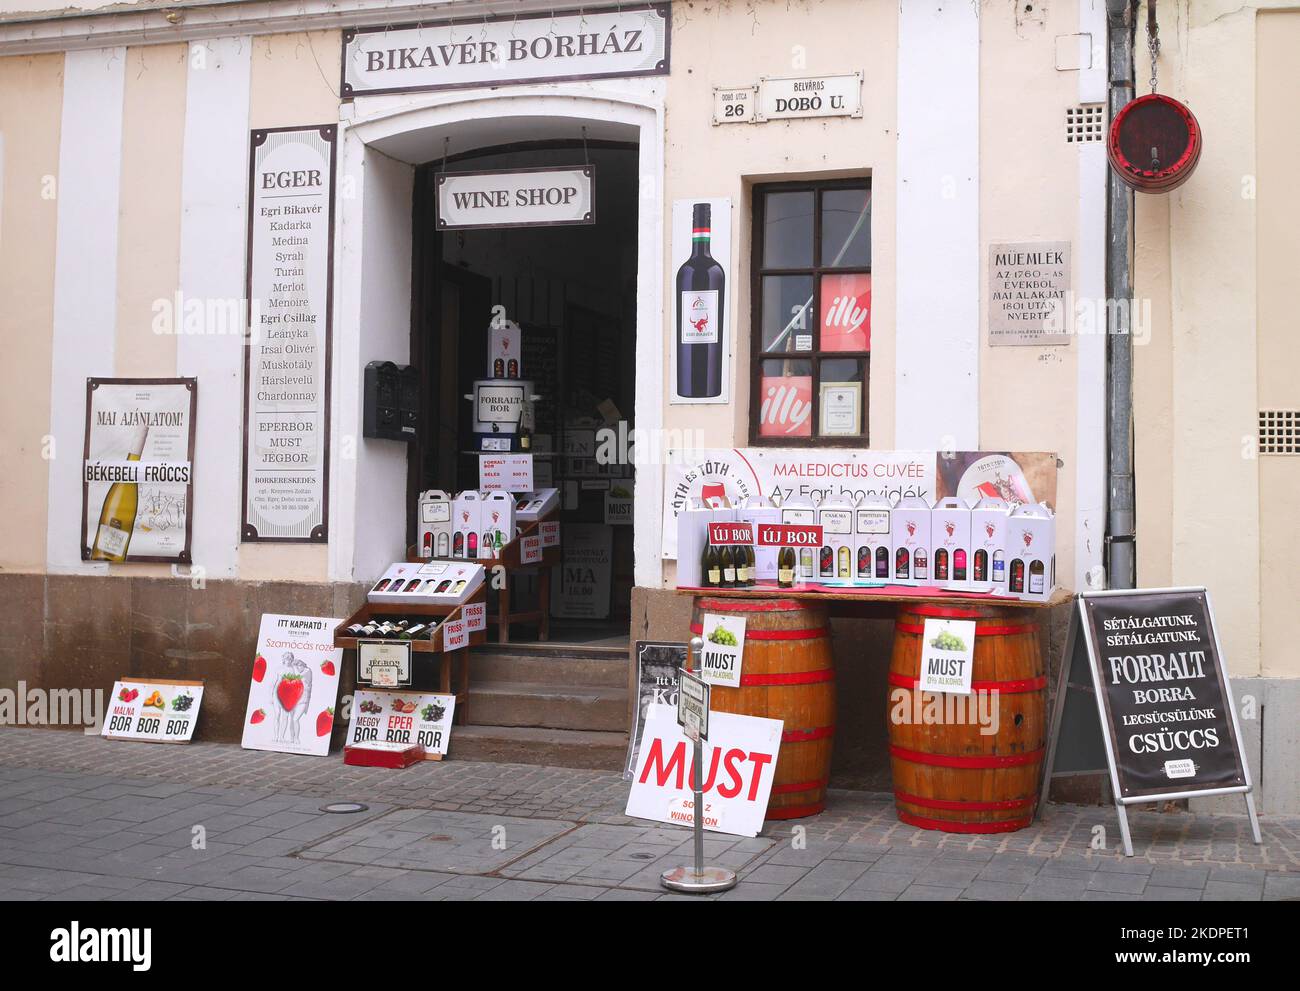 Exposition de vins à vendre en dehors d'un vendeur de vin traditionnel, Eger, Hongrie Banque D'Images